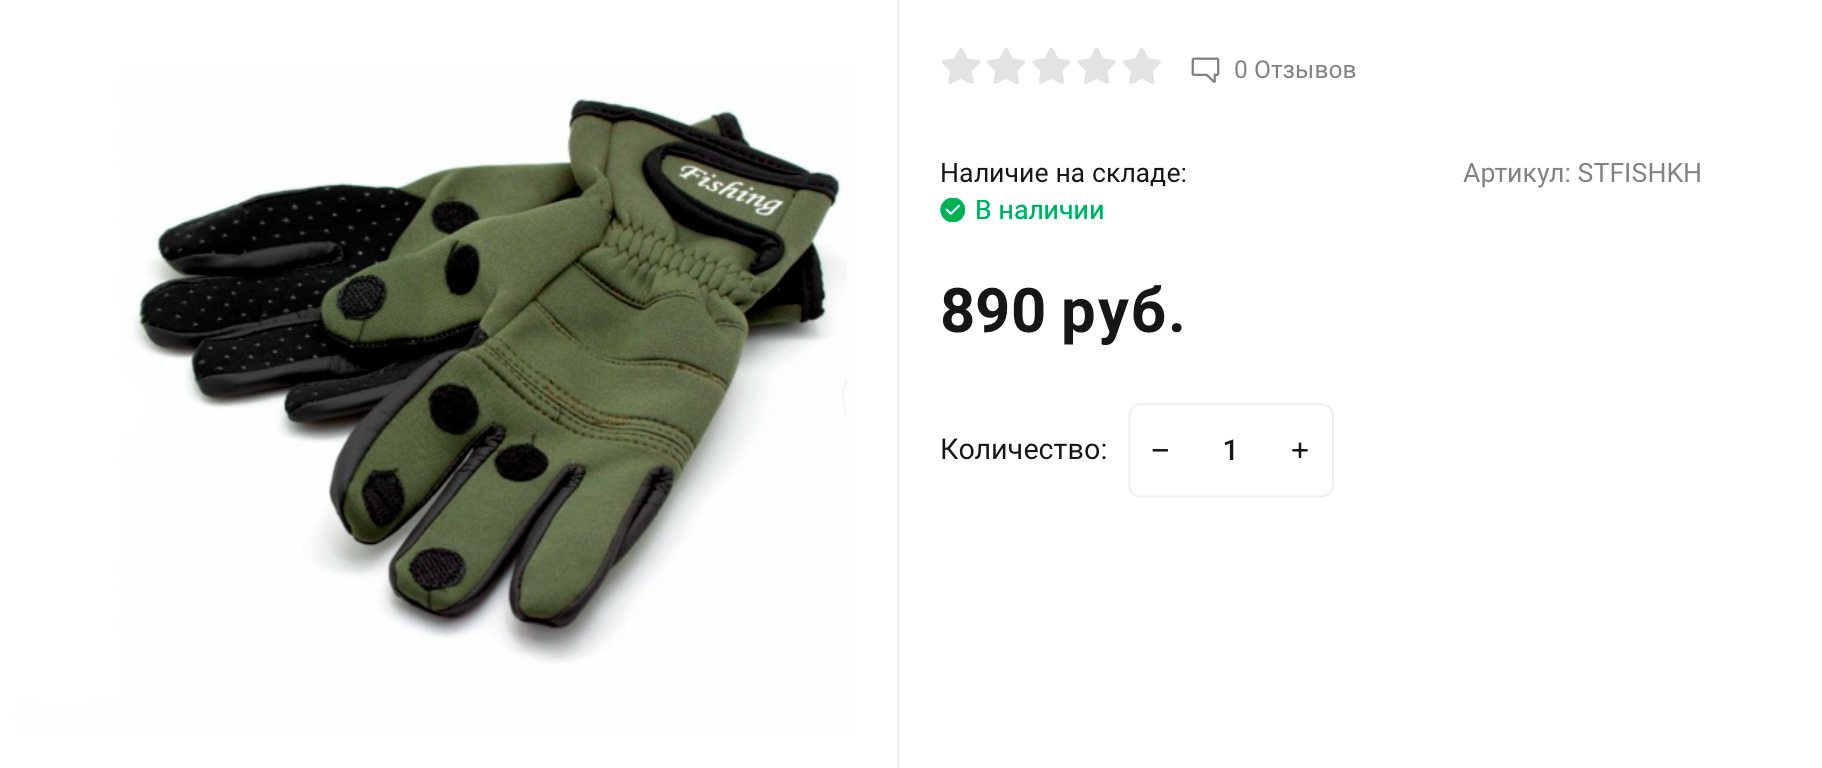 В специализированных магазинах для рыбаков можно встретить перчатки с откидными пальцами. Как по мне, это более удобно, чем рукавицы. Источник: stickhunt.ru